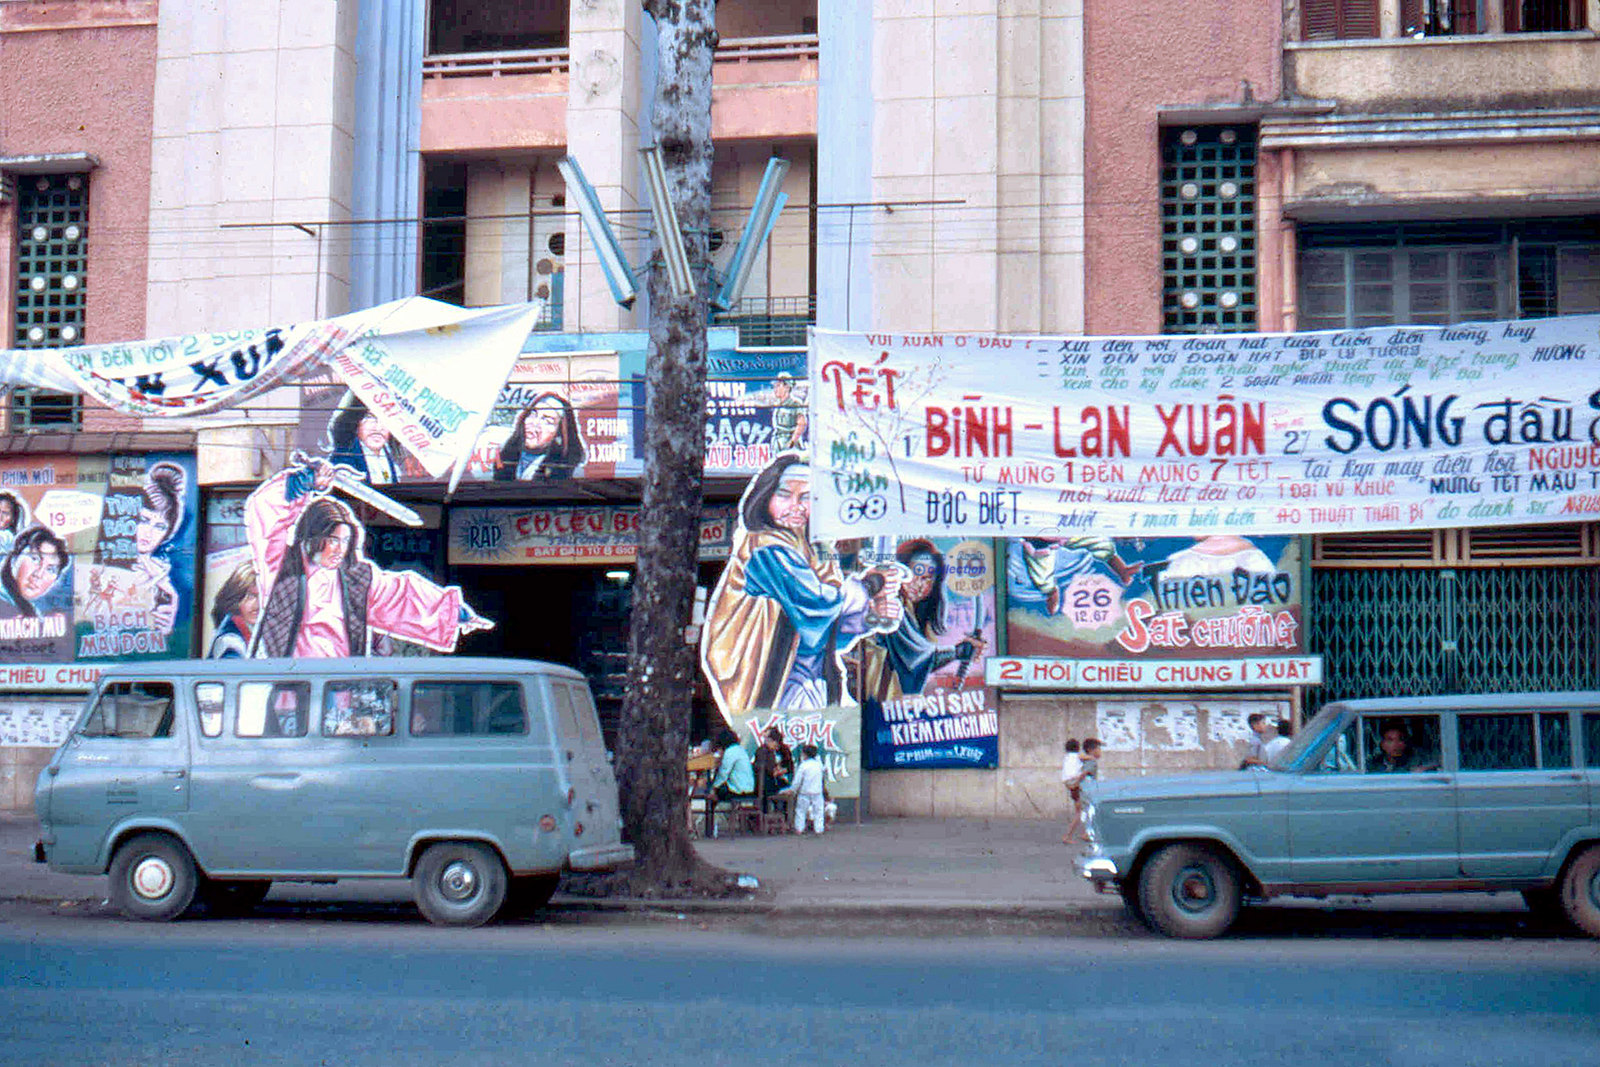 60 tấm ảnh màu đẹp nhất của đường phố Saigon thập niên 1960-1970 - 47